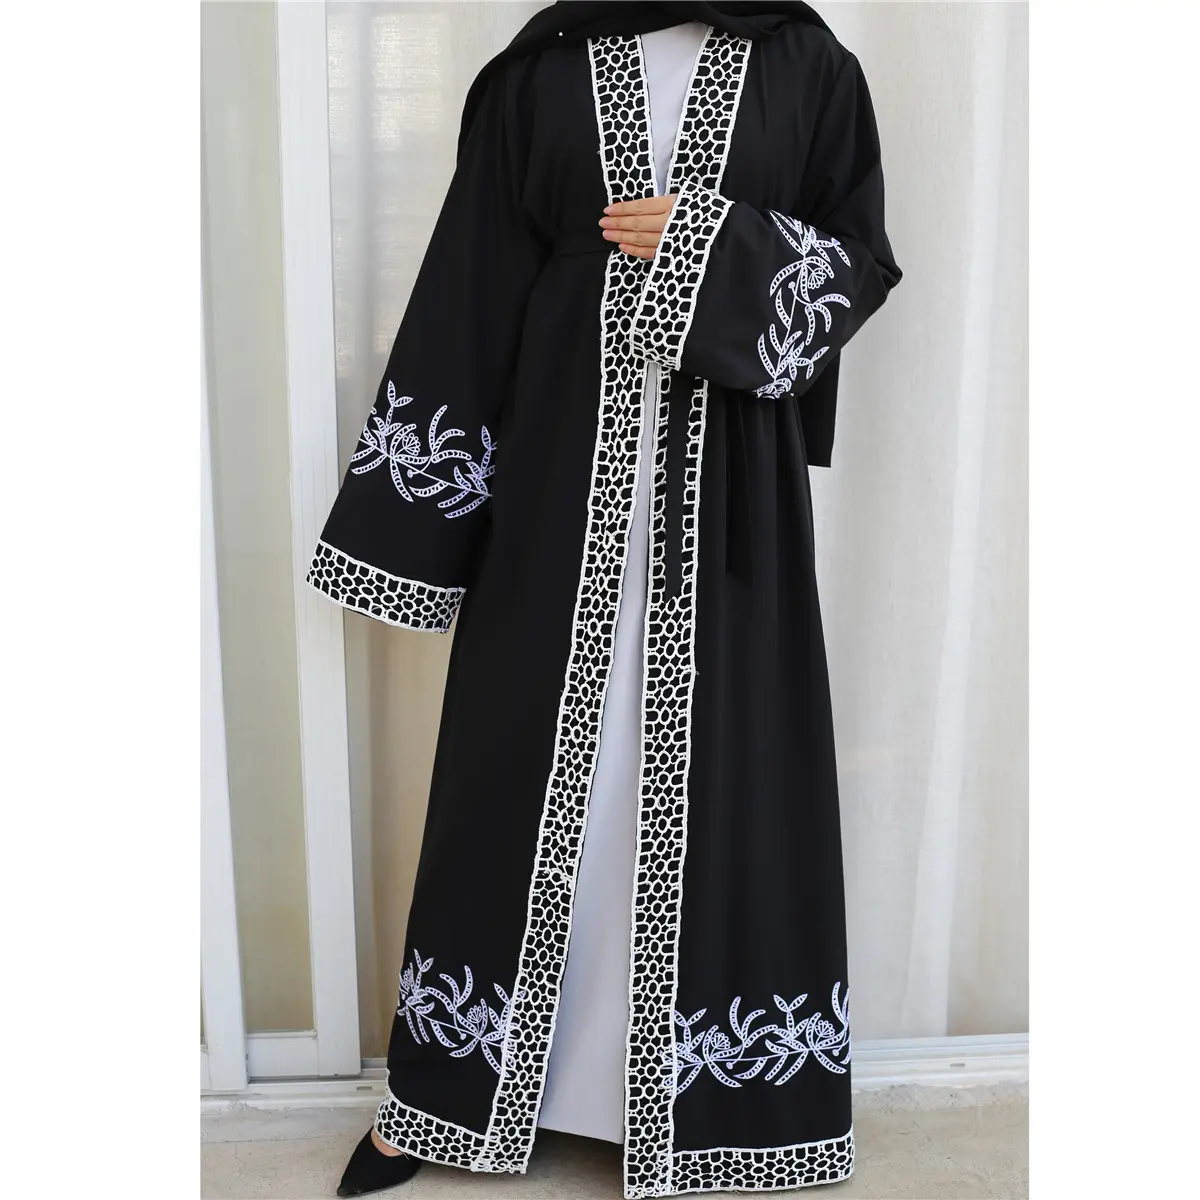 2021 Latest Design New Fashions Middle East Dubai Ethnic Region Clothing Flowers Embroidery Cardigan Long Sleeve Abaya